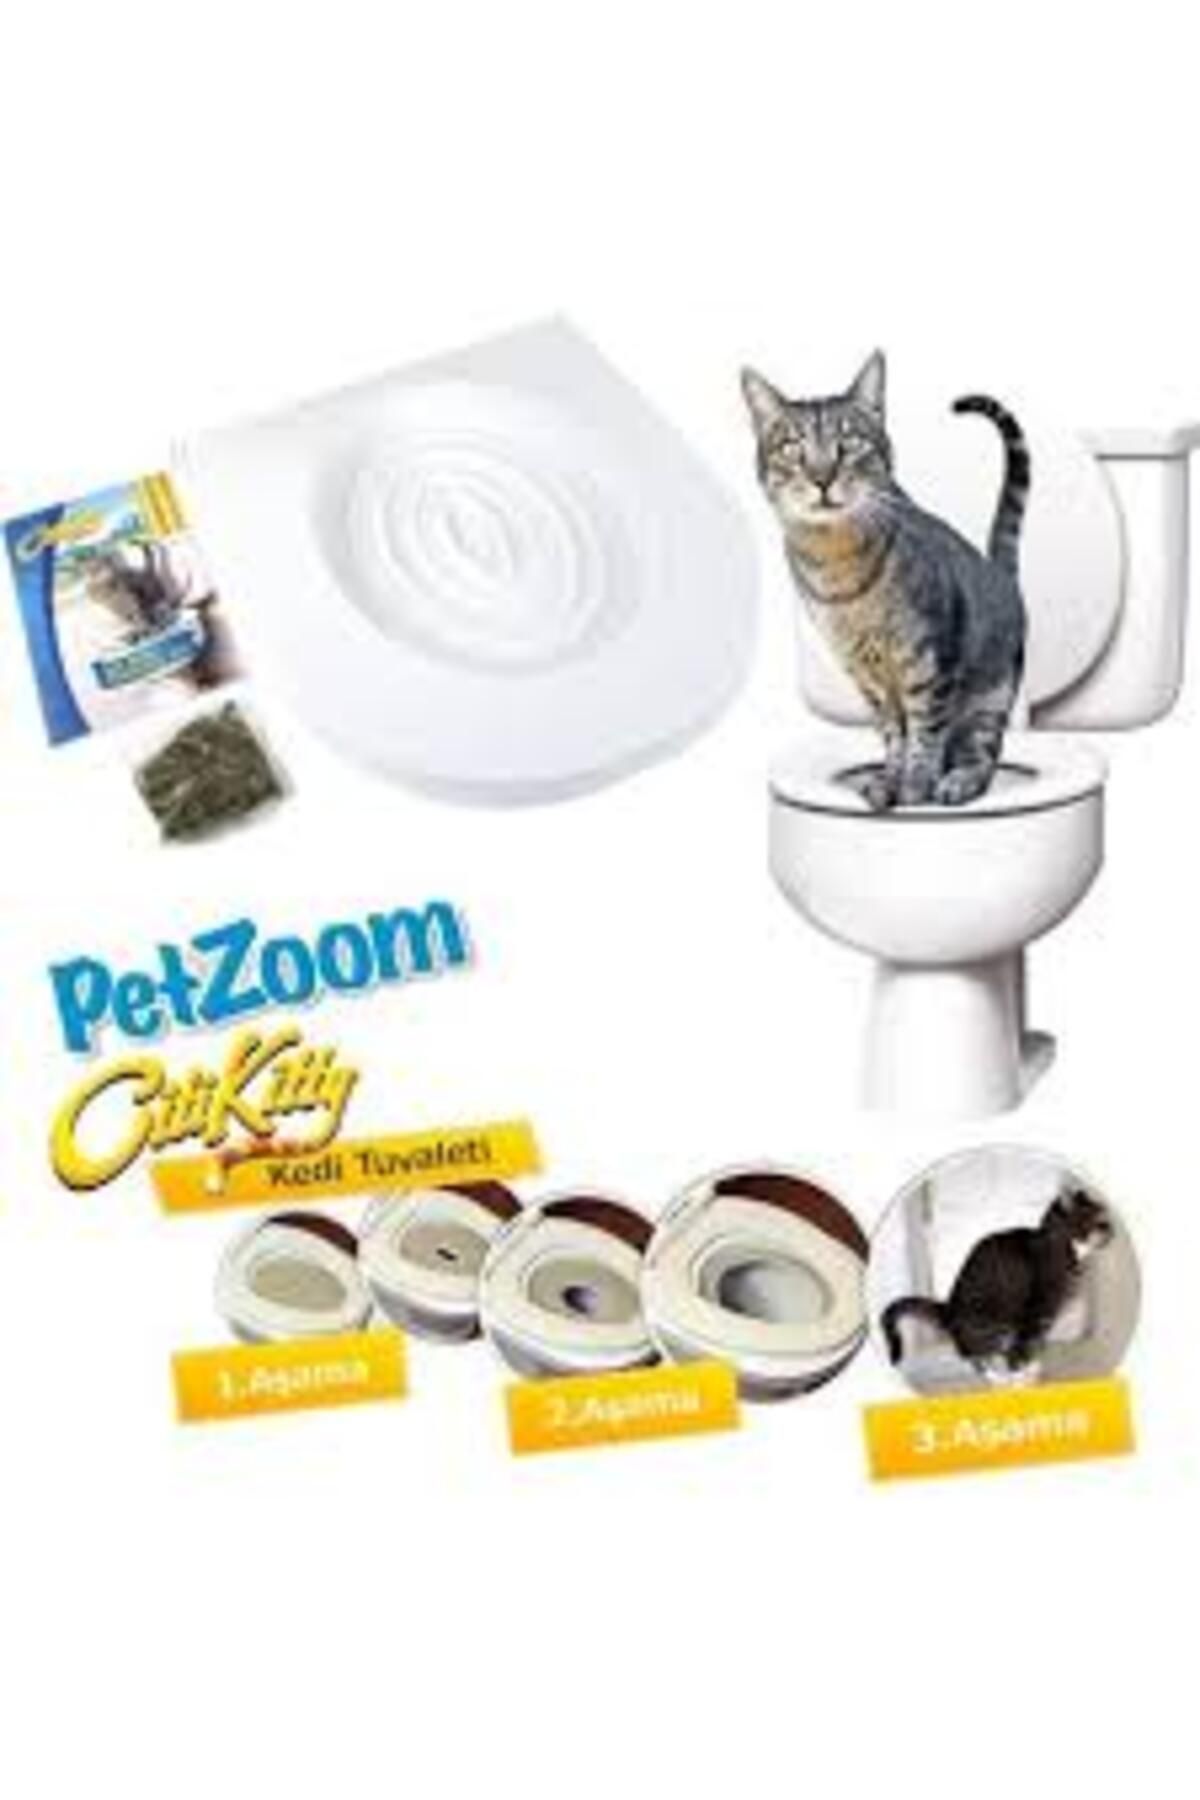 Denizyıldızı Citi Kitty Kedi Tuvaleti Kedi Klozet Eğitim Seti